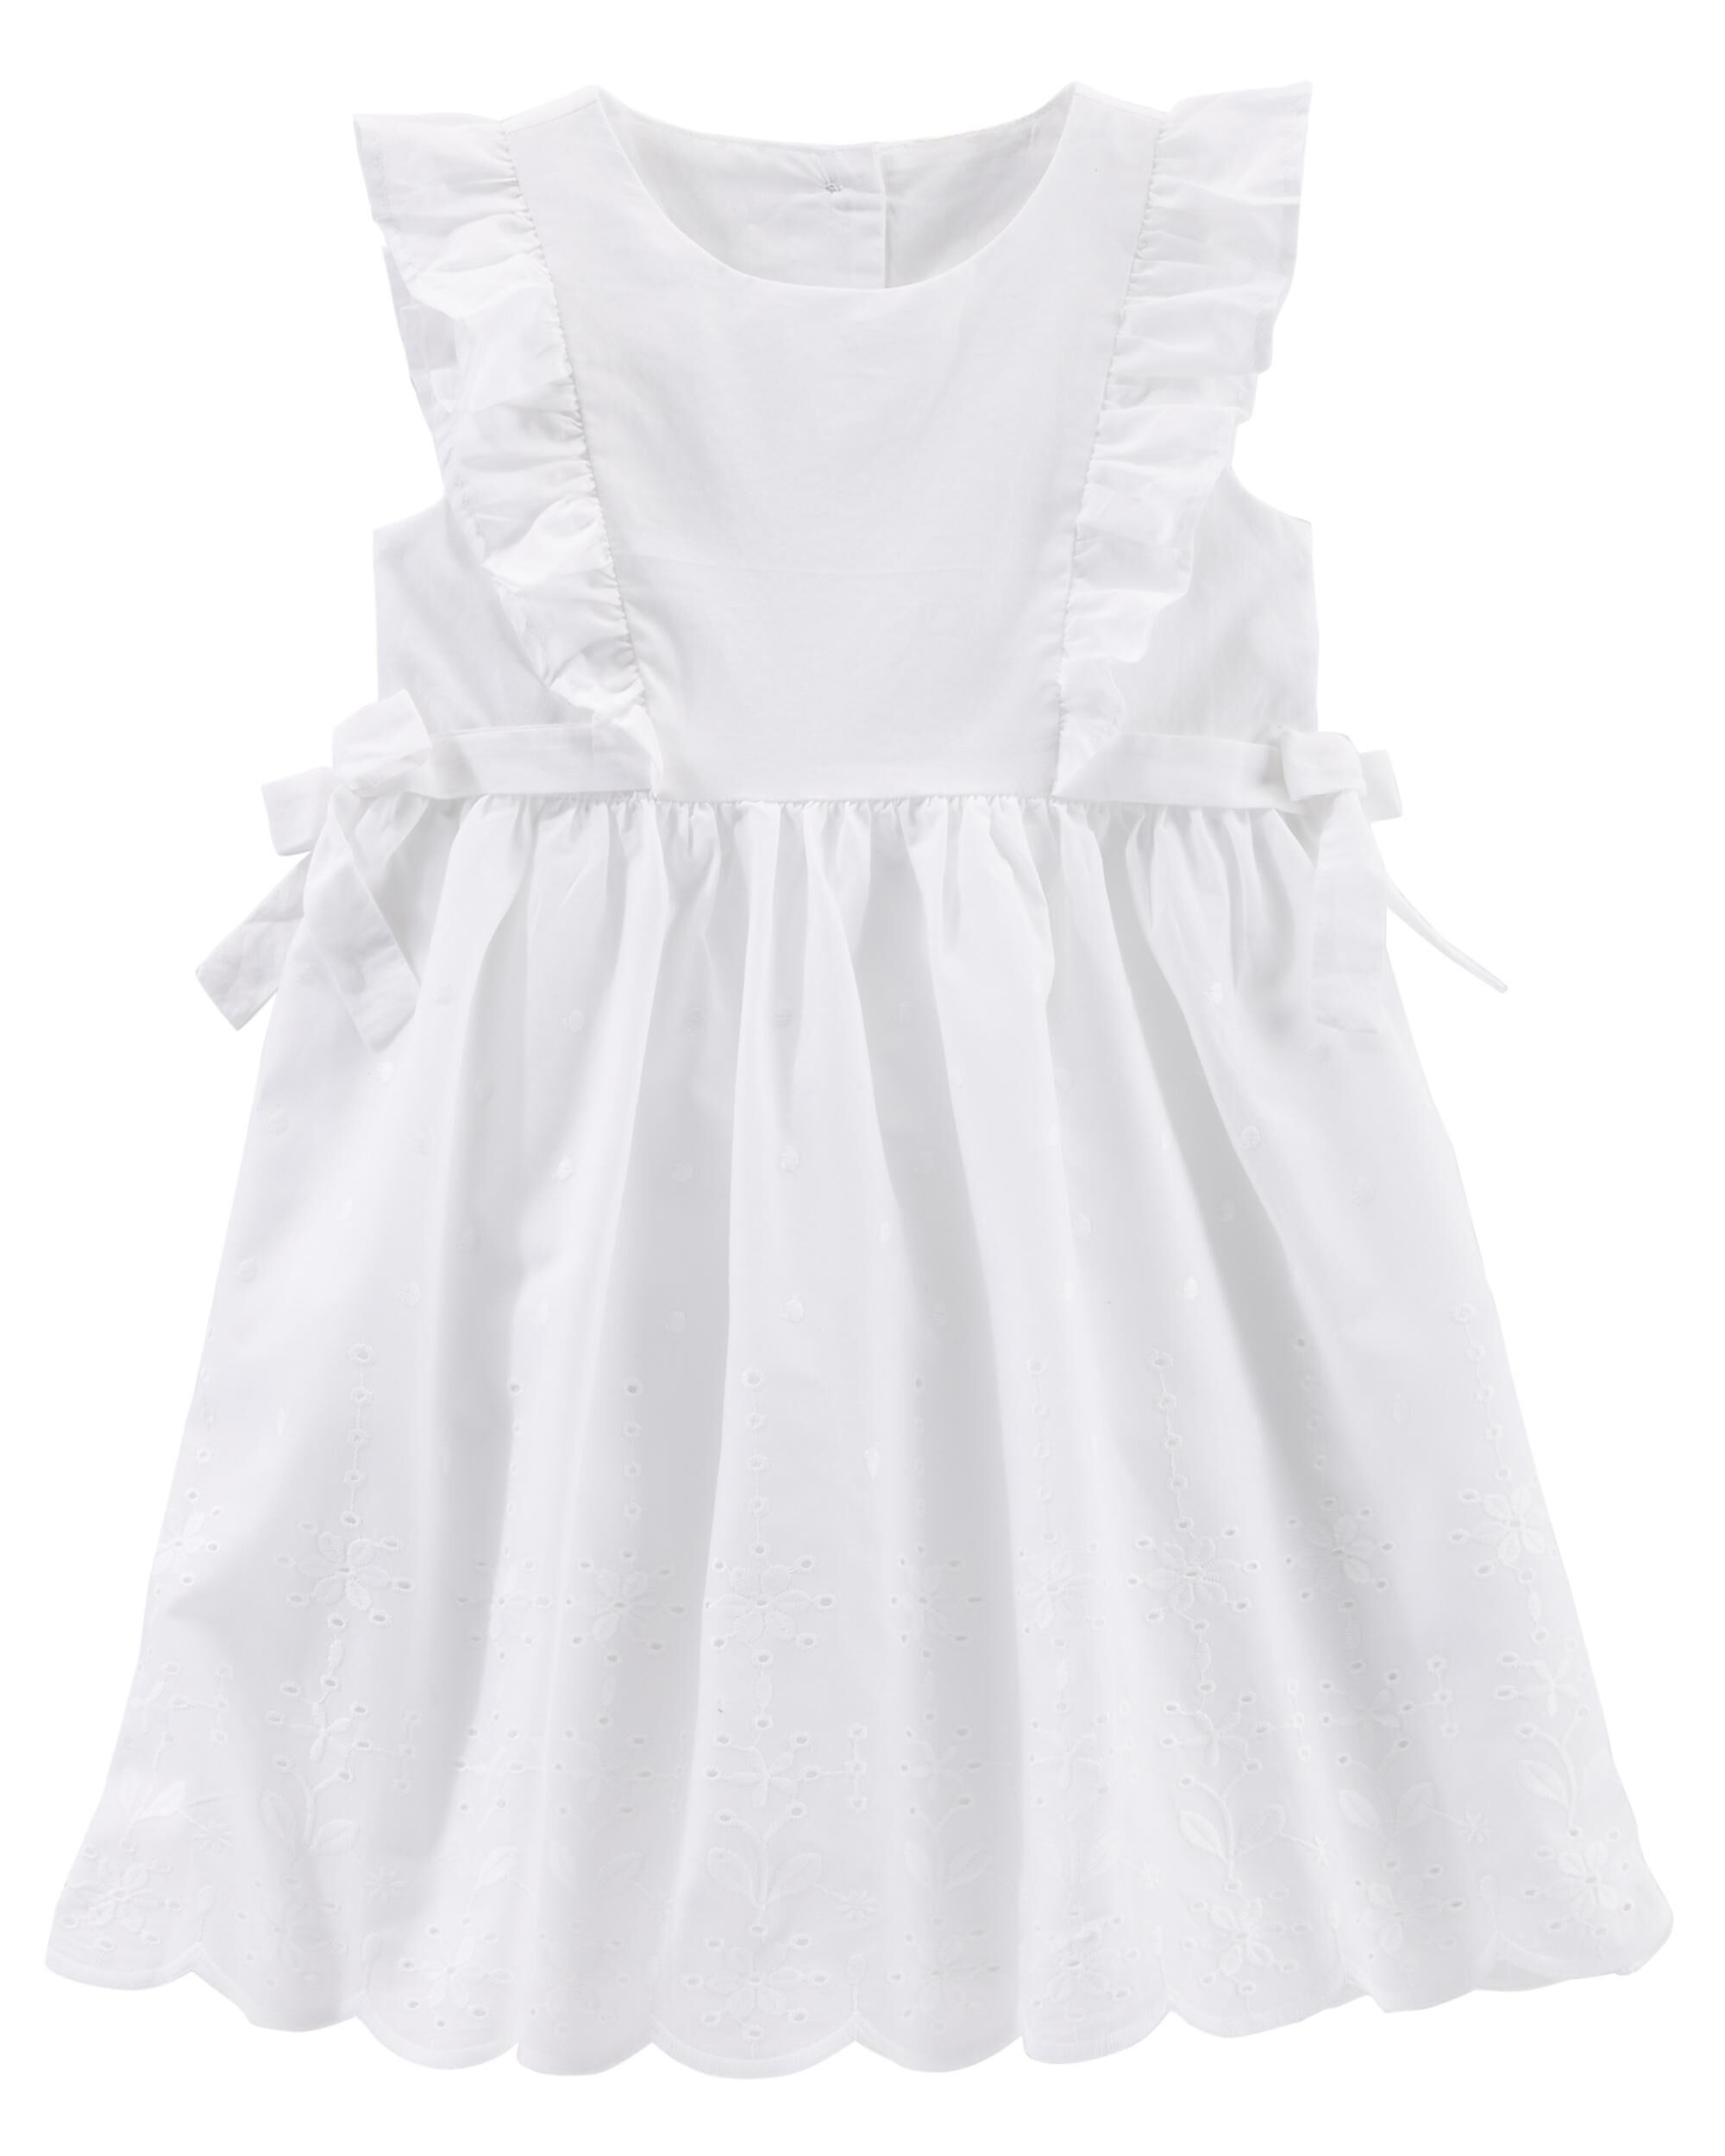 Toddler & Little Girl Dresses, Rompers | OshKosh | Free Shipping